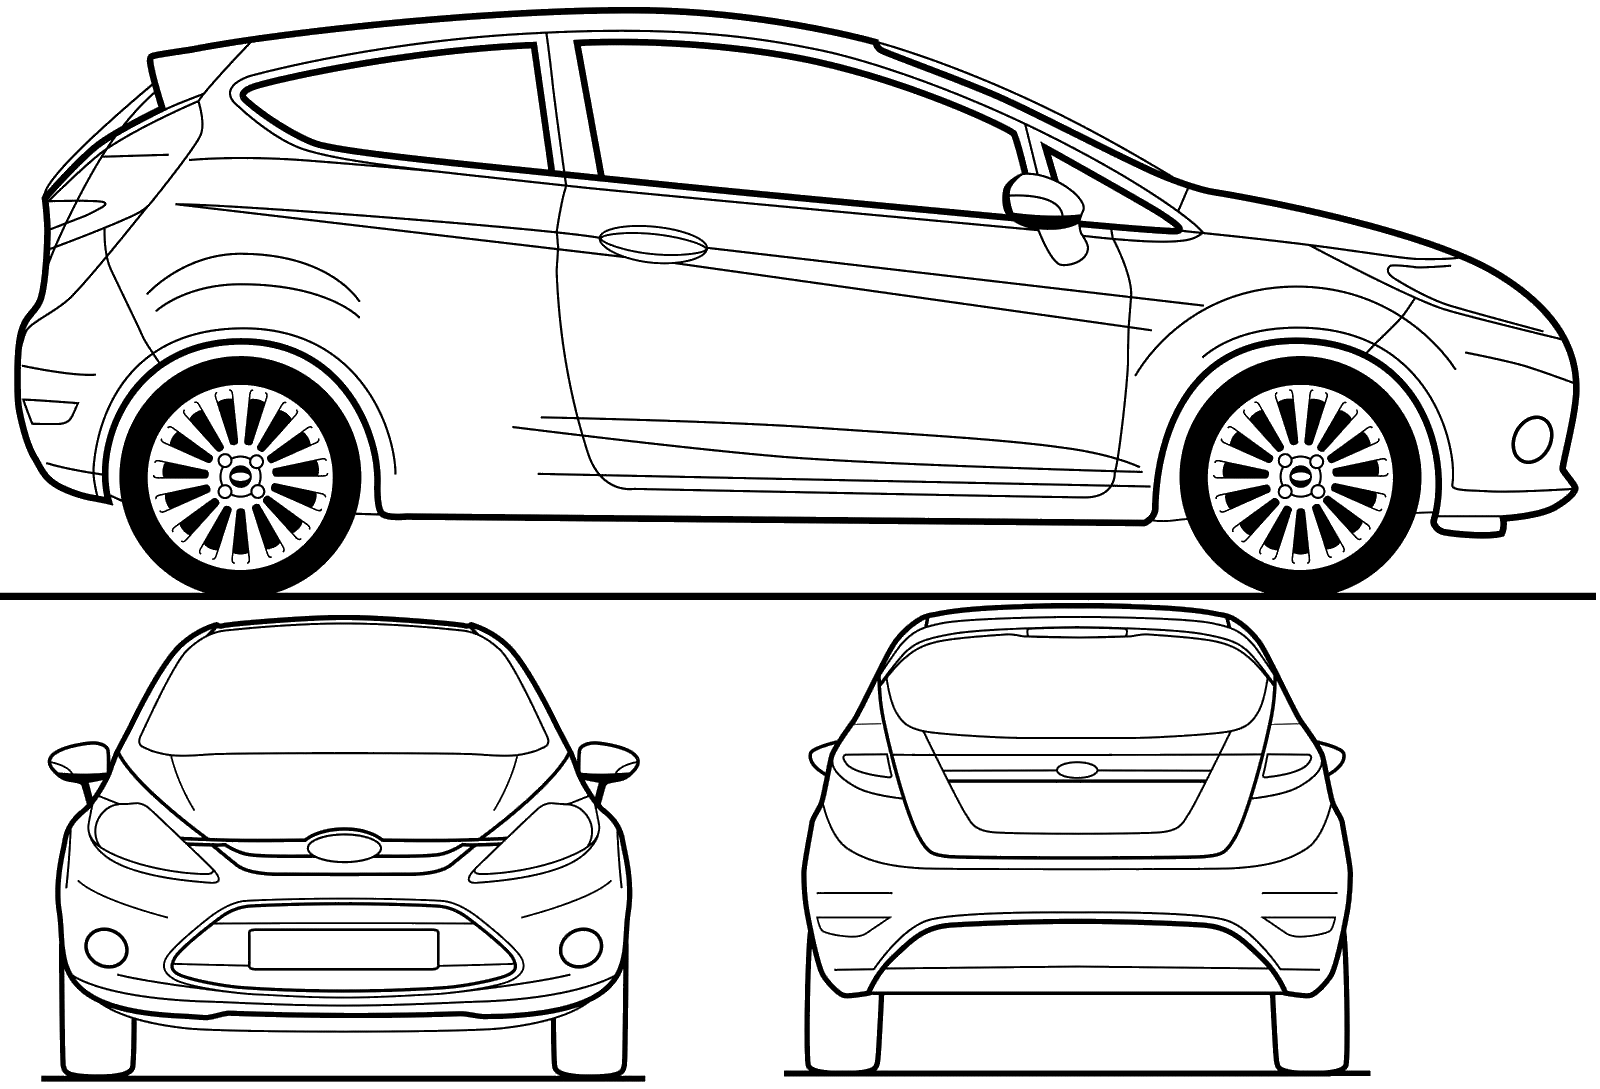 2008 Ford Fiesta 3door Hatchback blueprints free Outlines